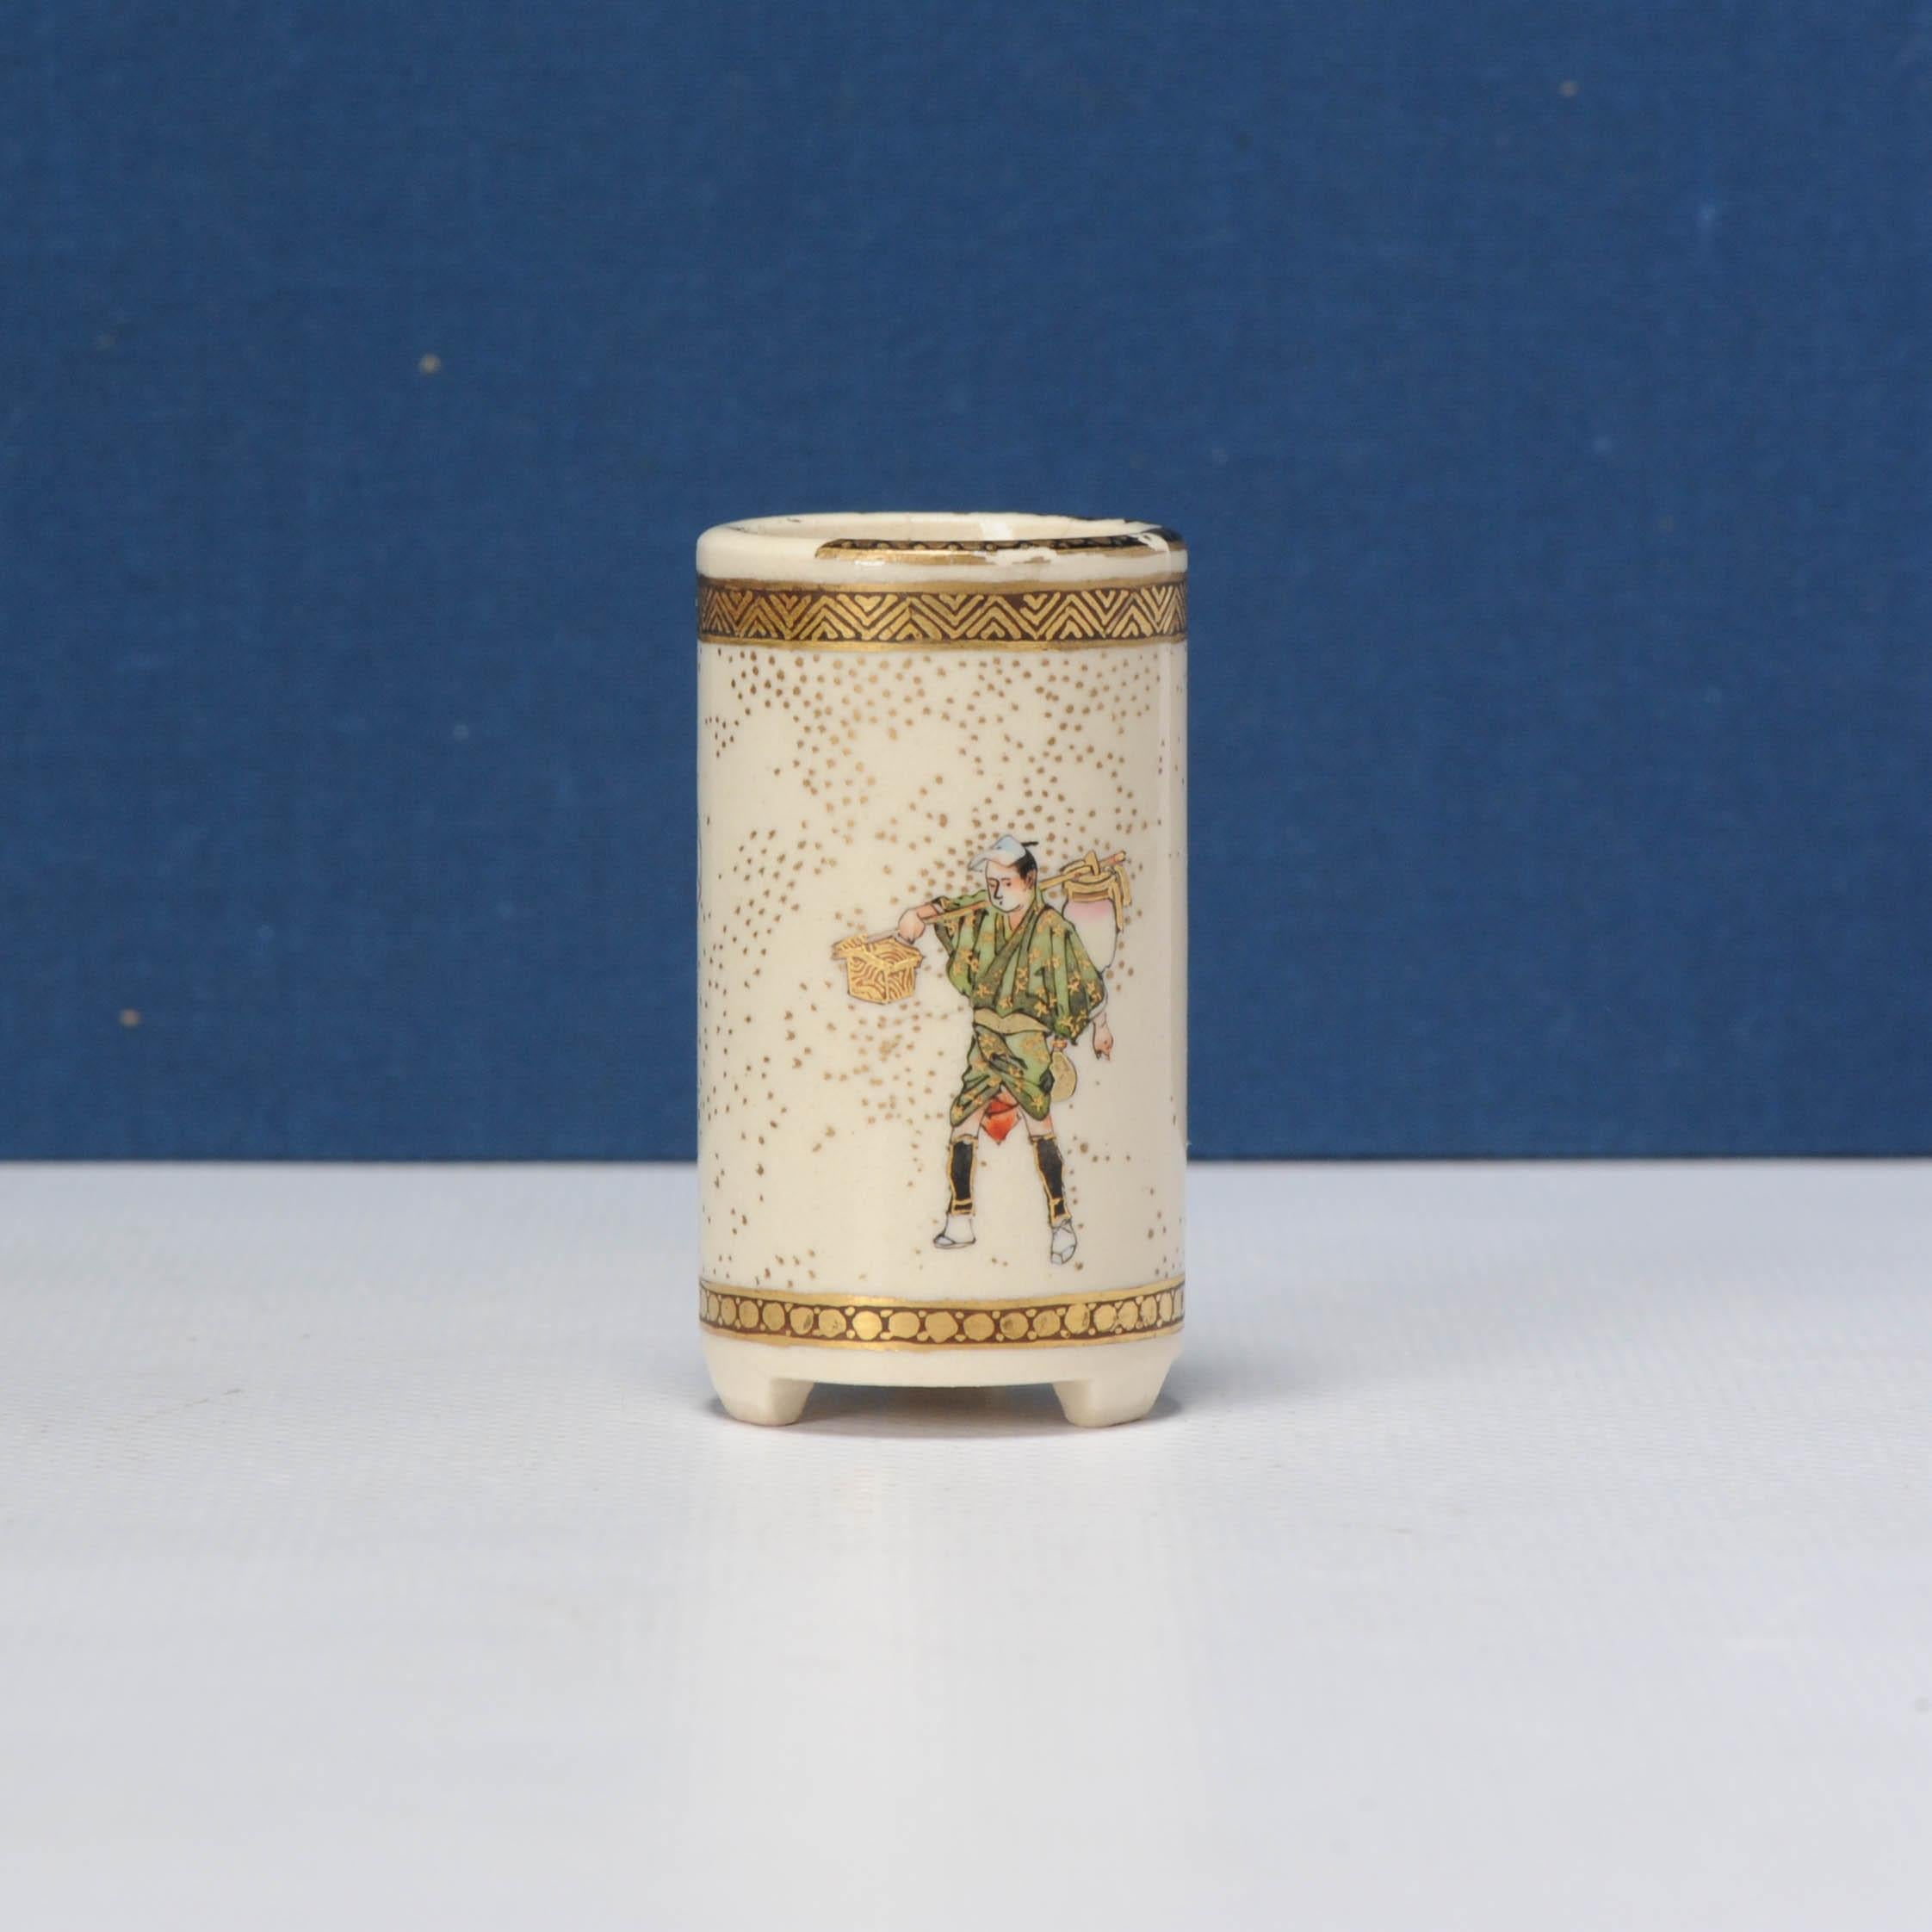 Zylindrische Vase mit einer fortlaufenden Szene einer Gruppe von Reisenden und Kurieren, von denen sich einer bückt, um seine Schnürsenkel zu binden, signiert Kinkozan.

Zusätzliche Informationen:
MATERIAL: Porzellan & Töpferei
Japanischer Stil: